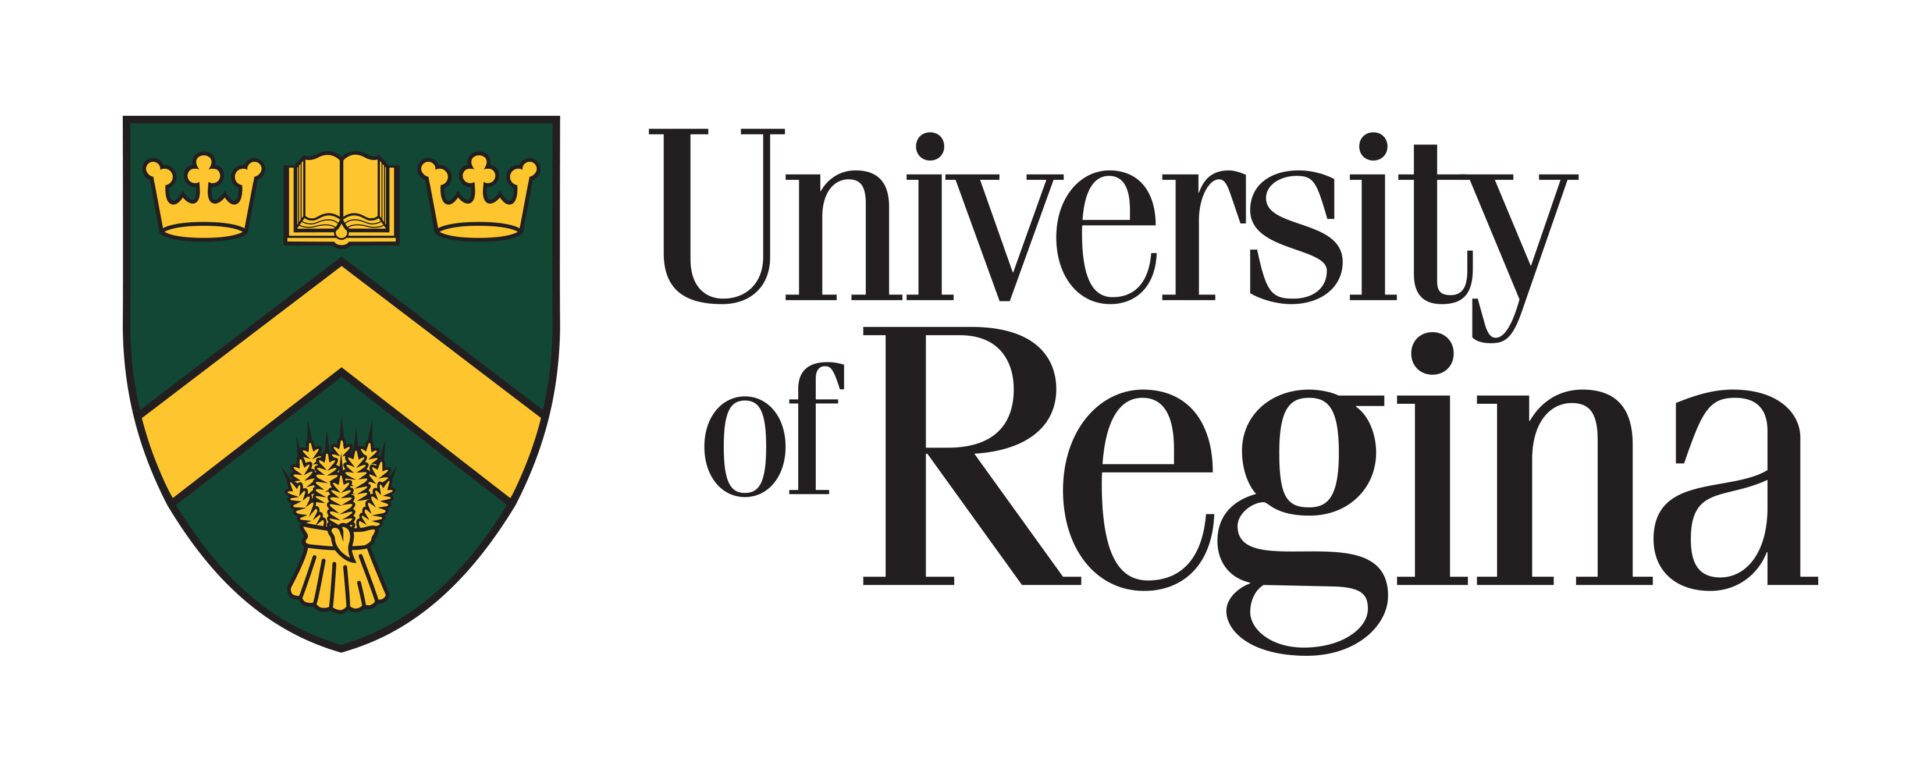 یونیورسٹی آف ریجینا کا لوگو